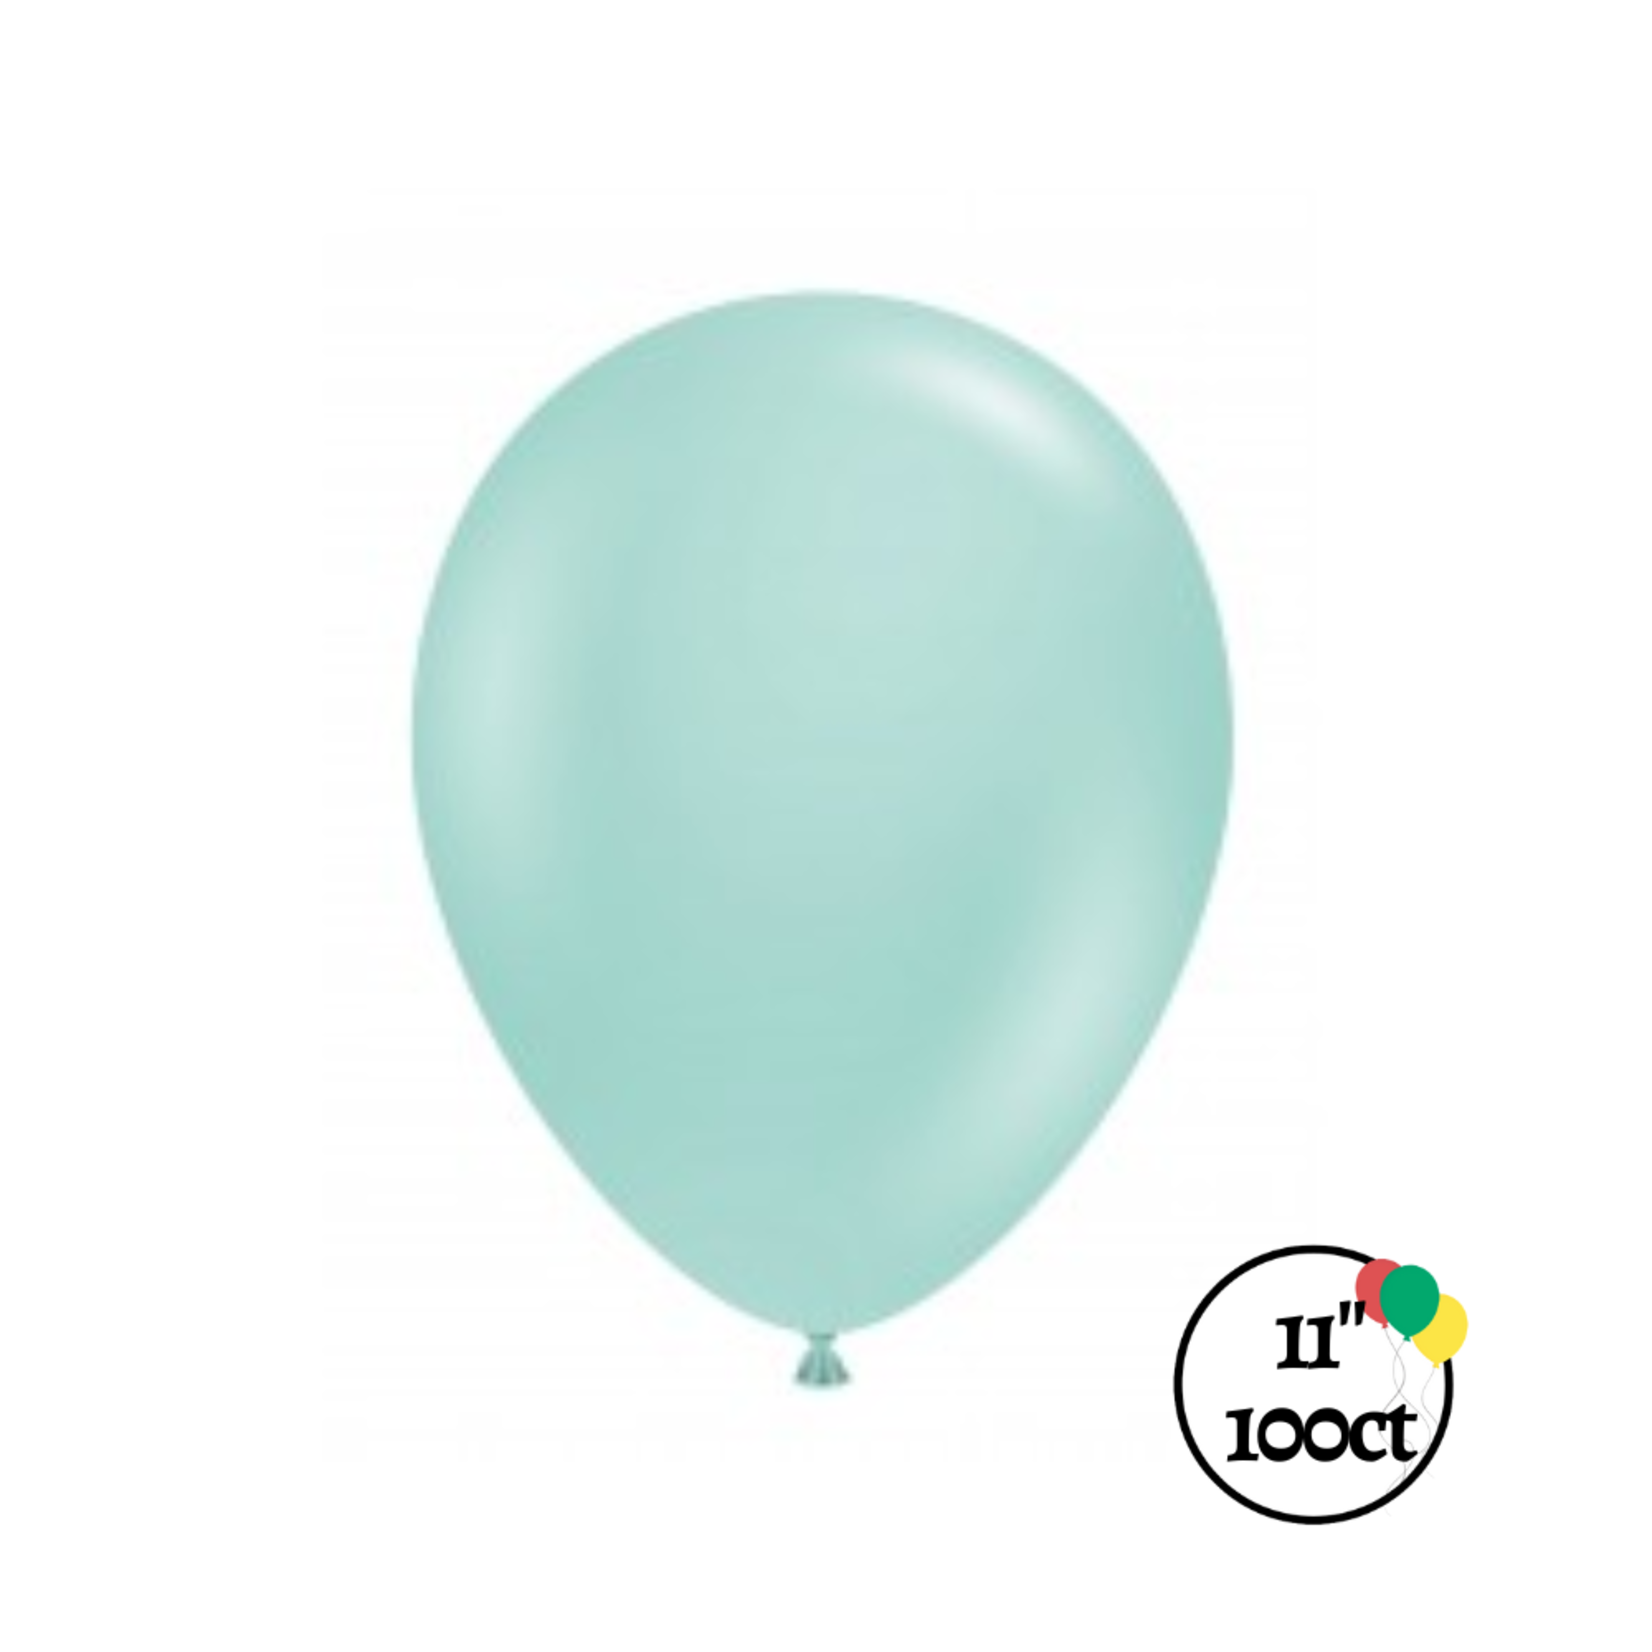 Tuftex 11" Tuftex Sea Glass 100ct Balloon